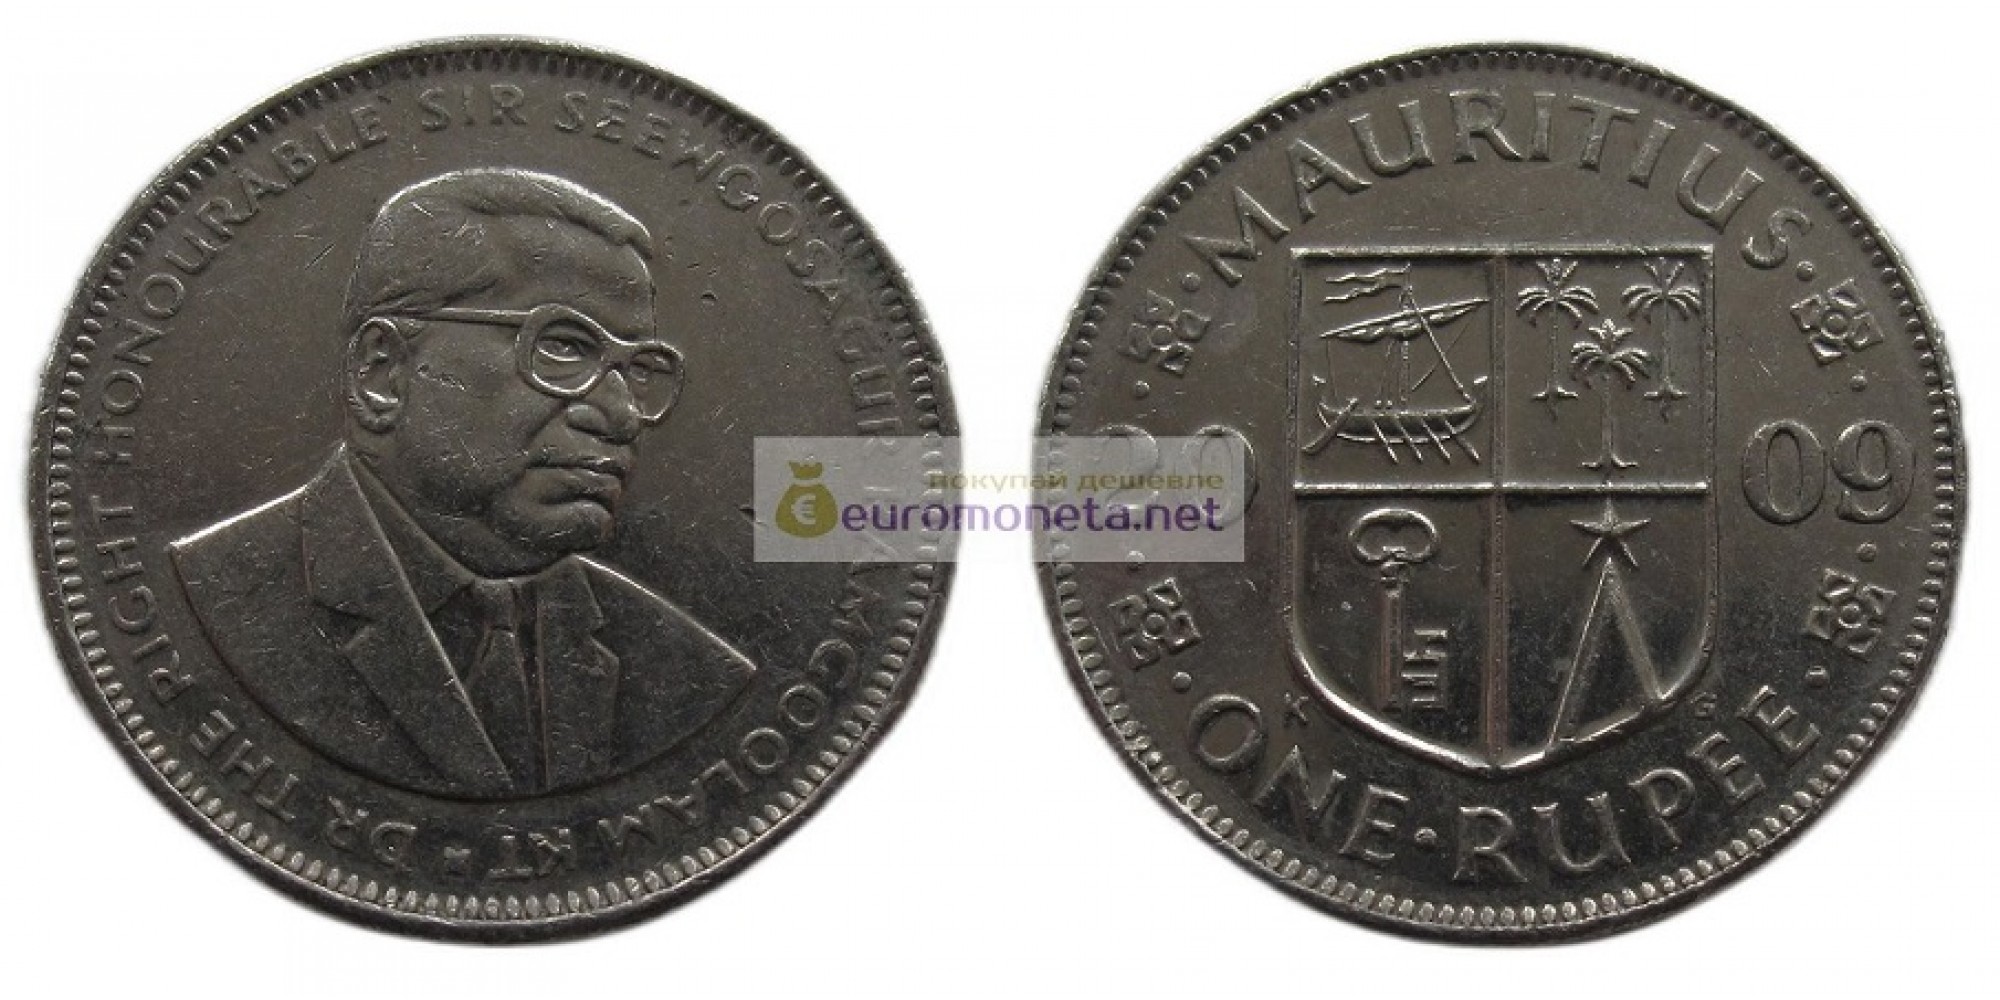 Республика Маврикий 1 рупия 2009 год. Сивусагур Рамгулам